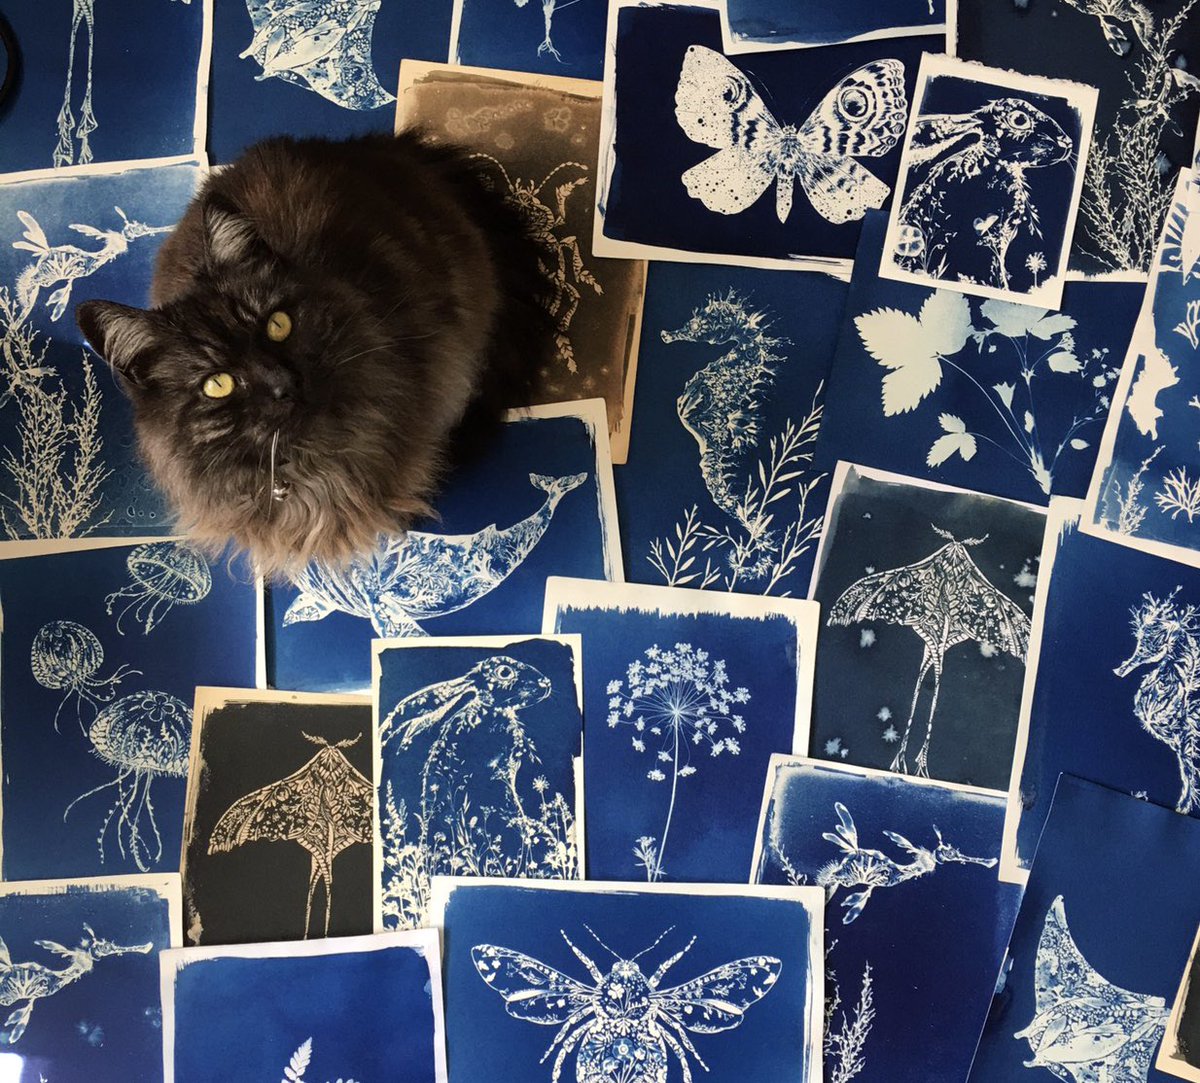 Cyanotypes + my cat 💙